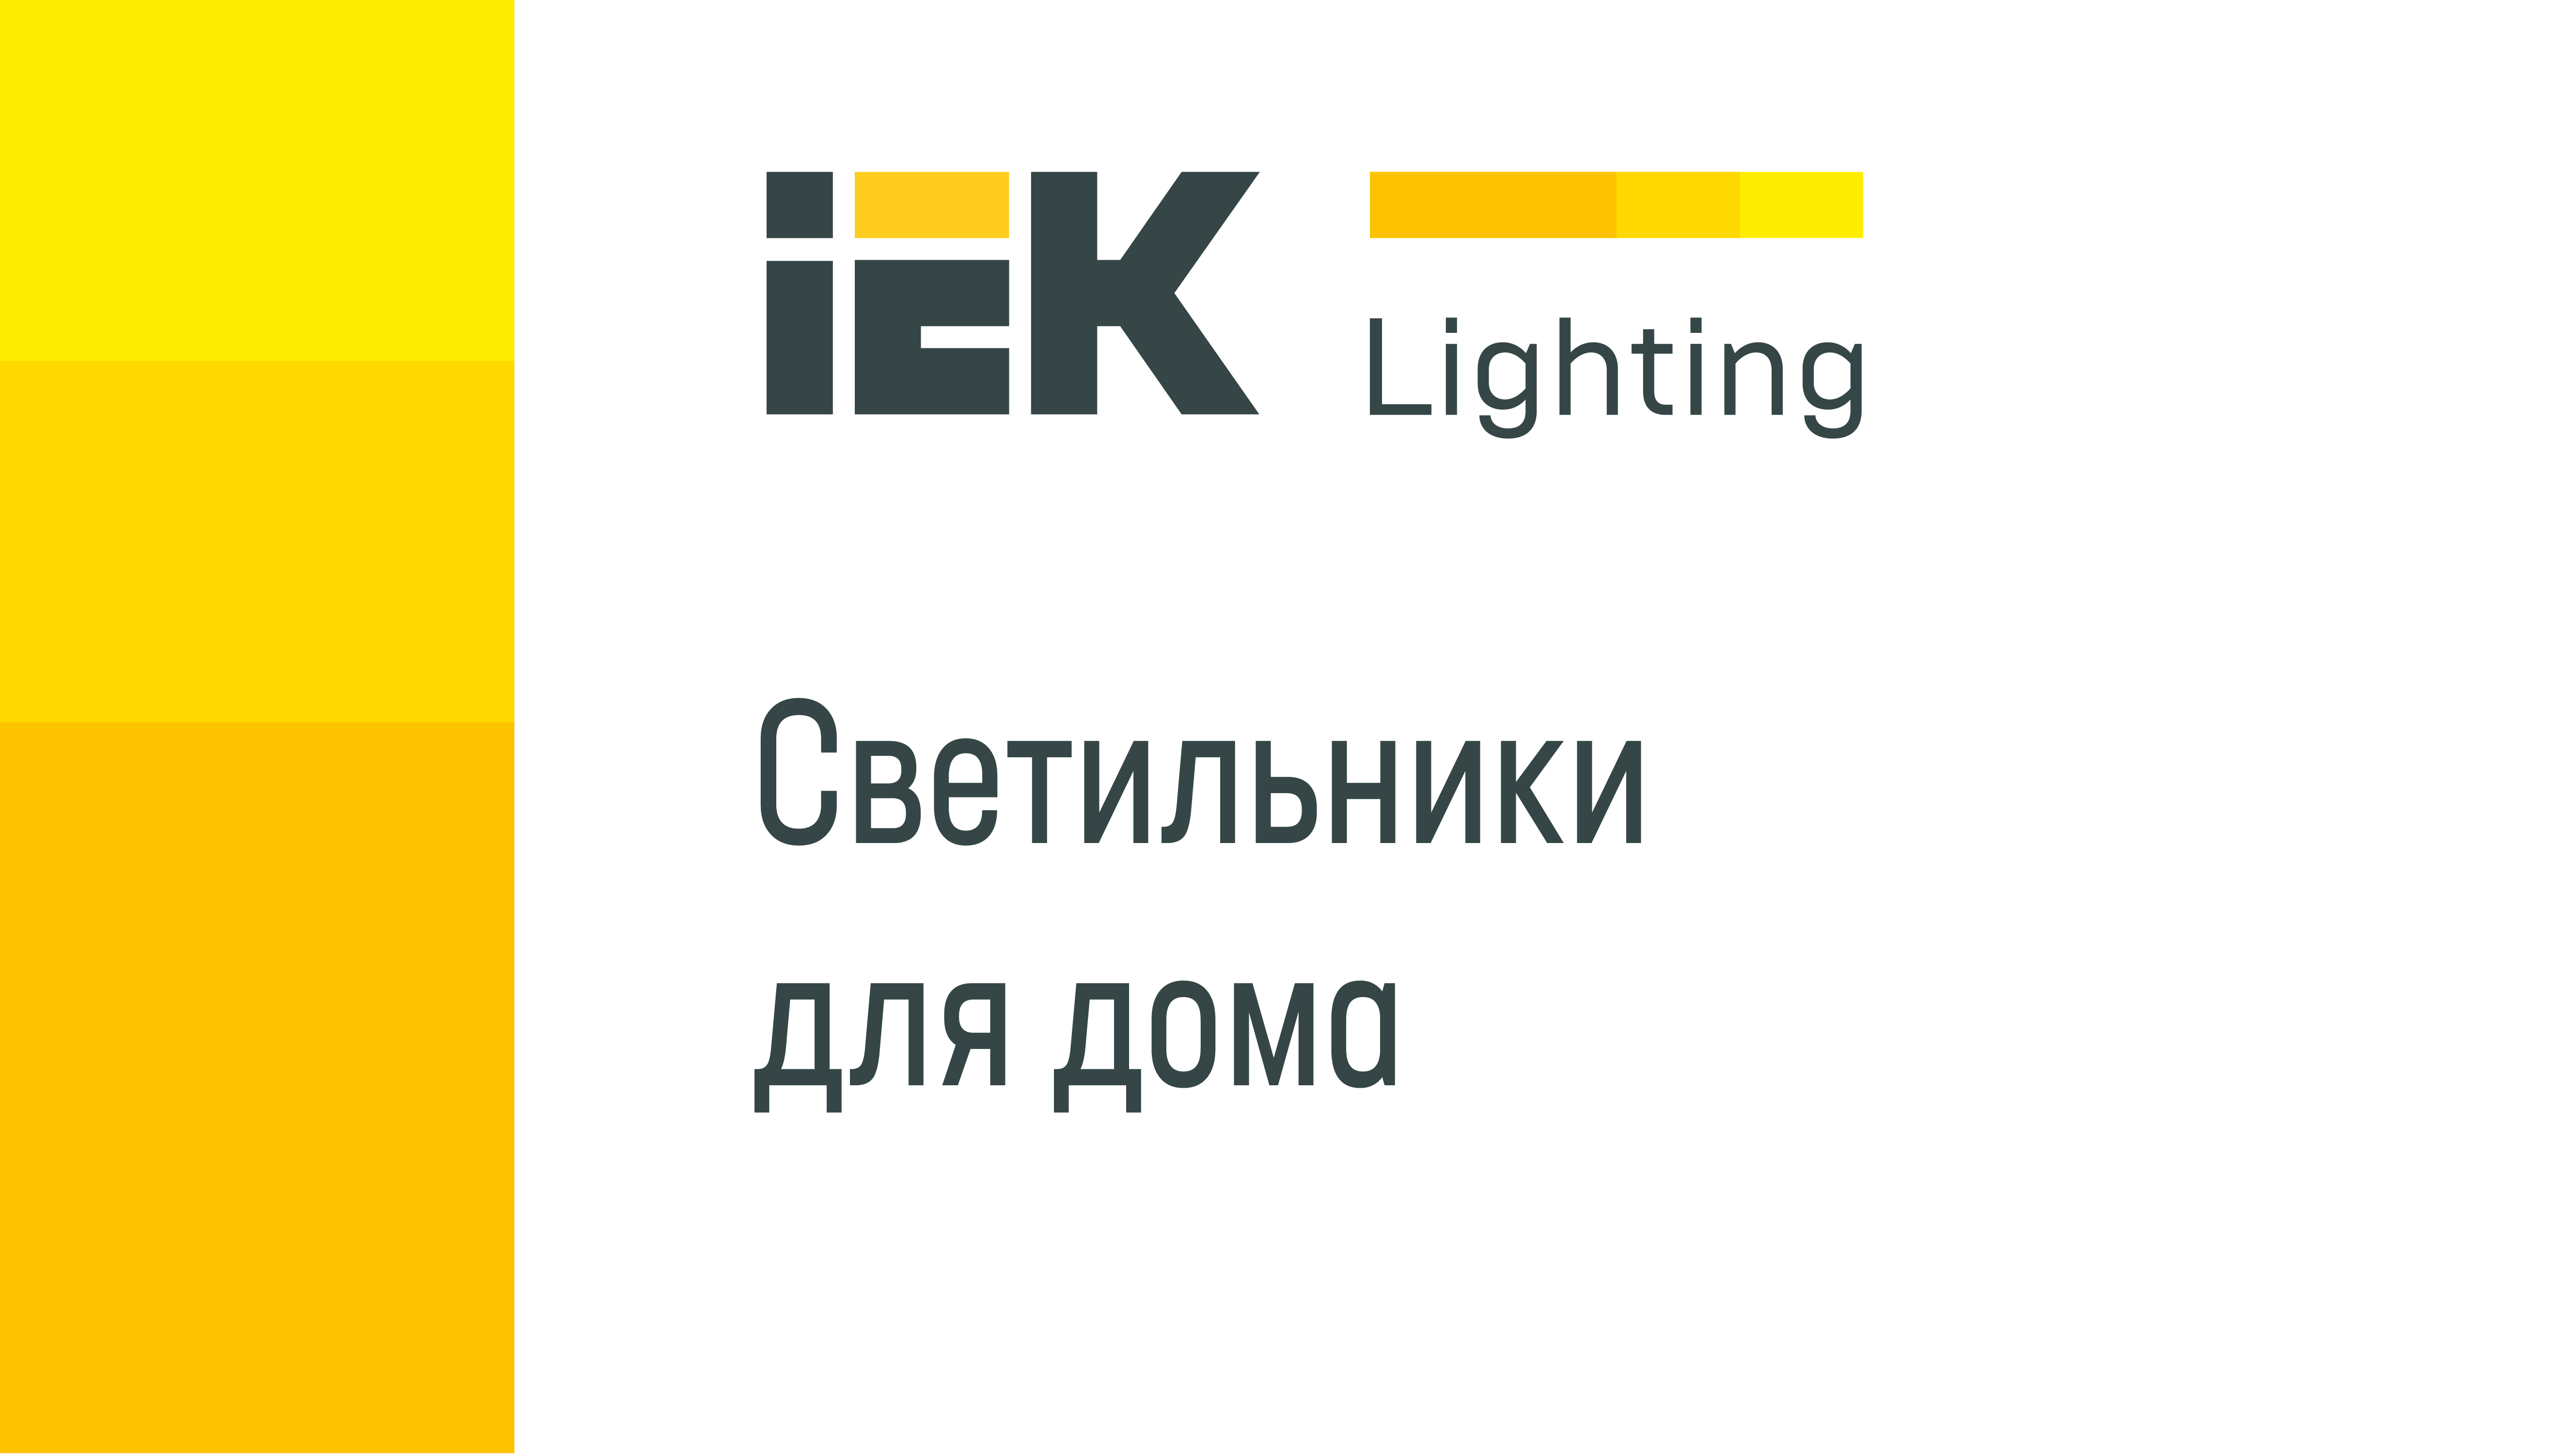 Новая коллекция бытовых светильников IEK Lighting для розничных продаж